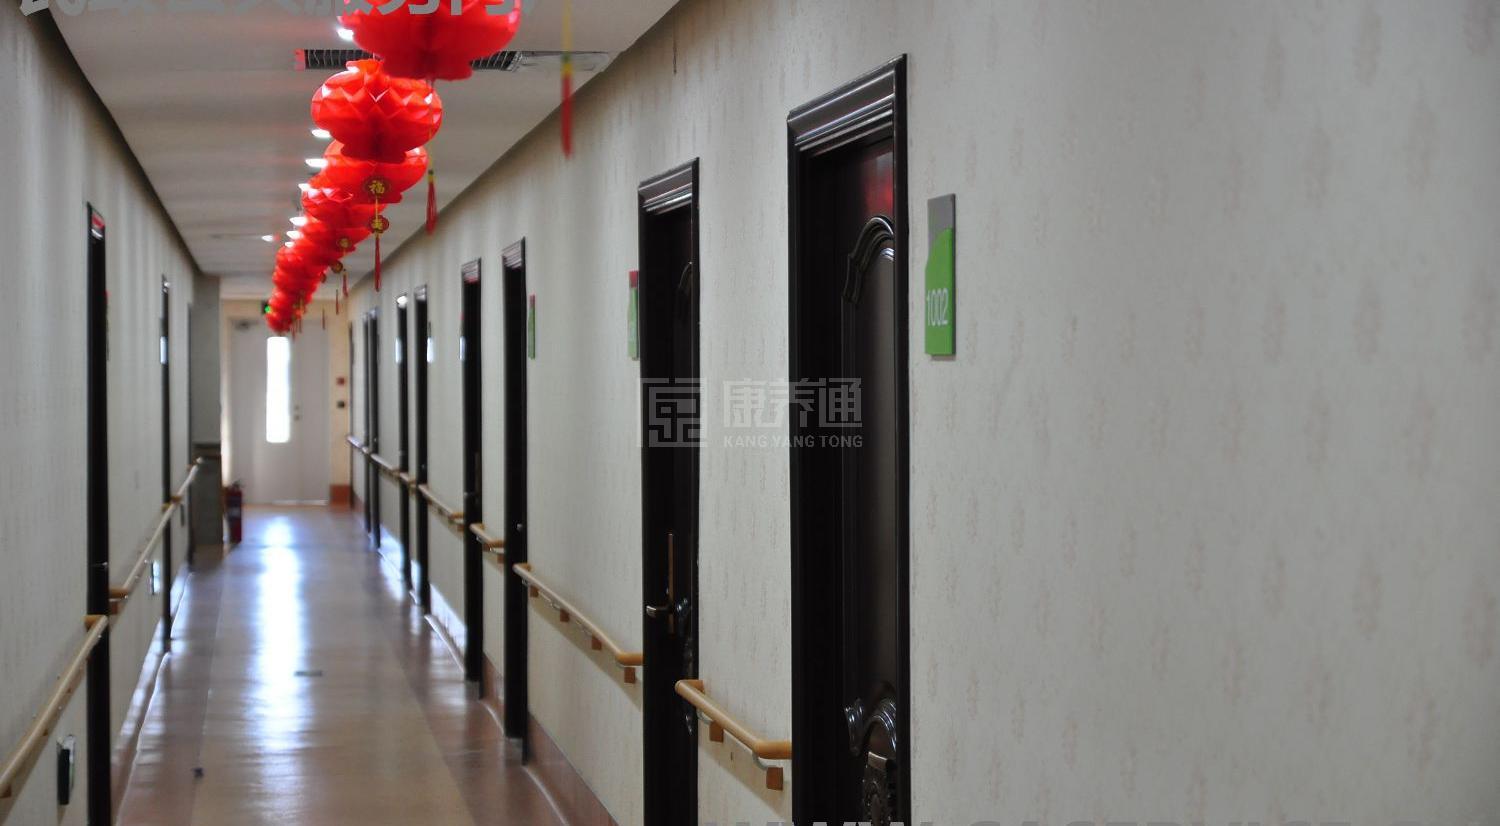 北京汇晨古塔老年公寓有限公司服务项目图3惬意的环境、感受岁月静好